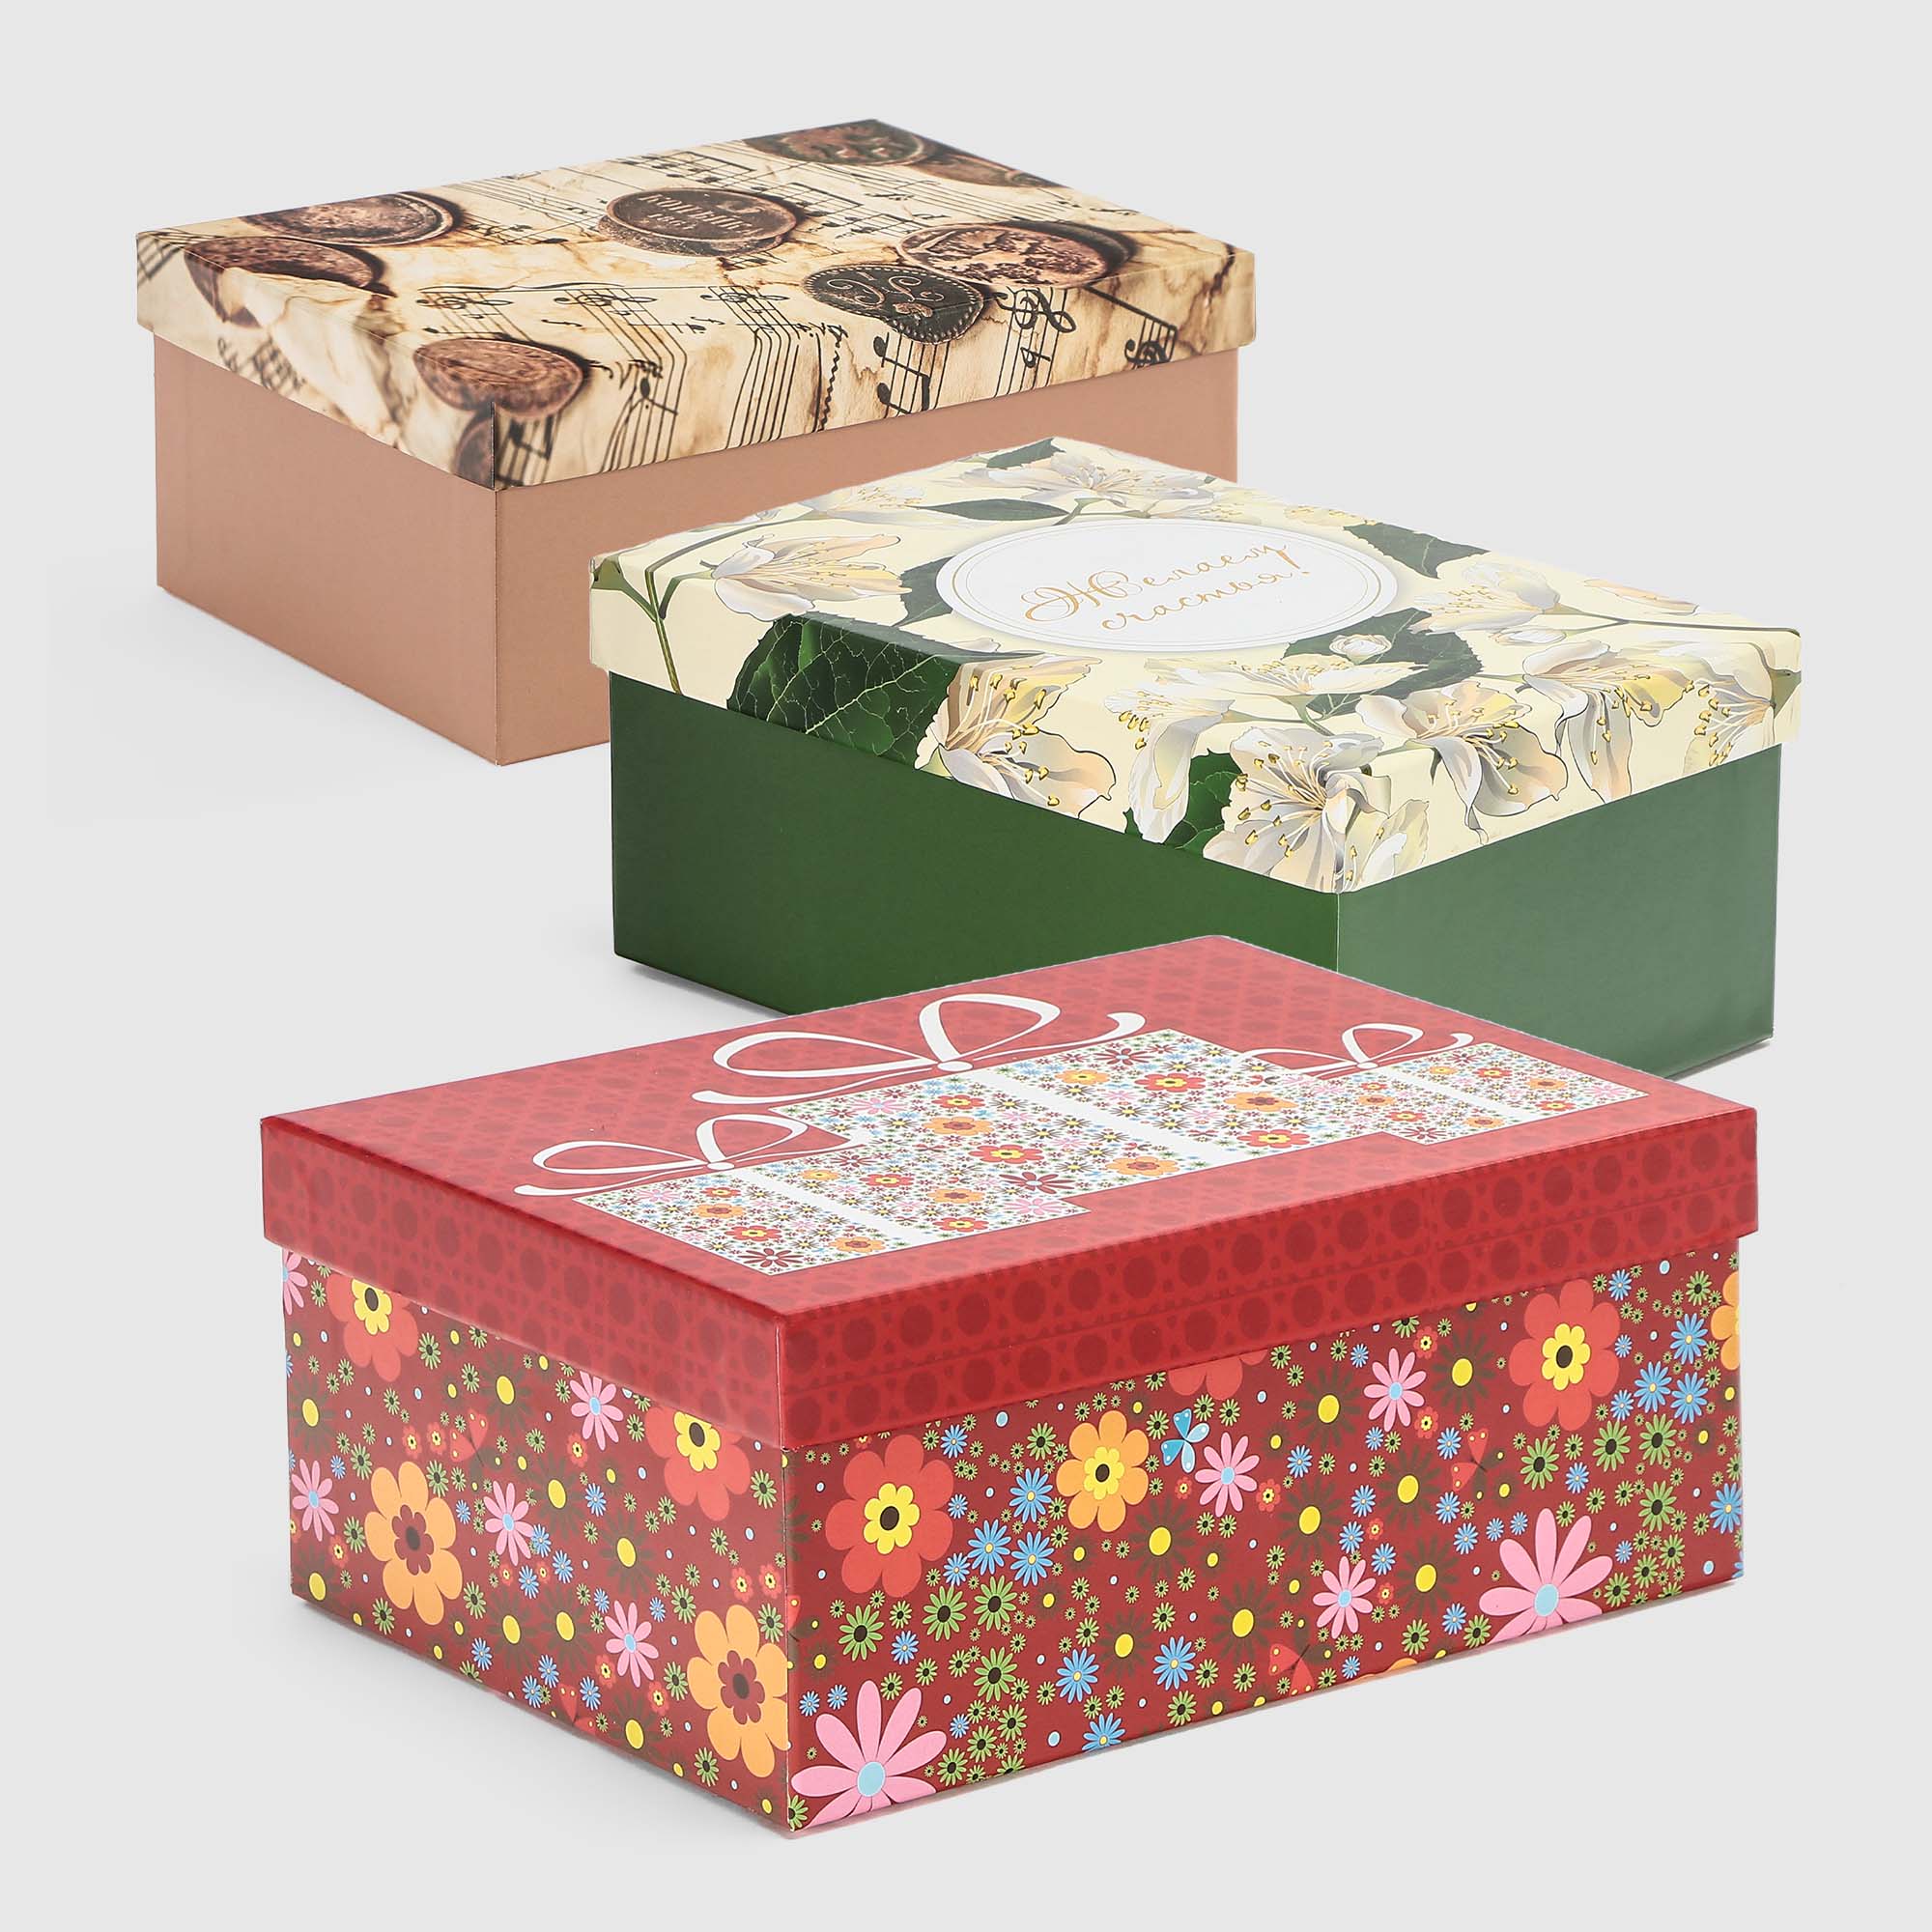 коробка картонная grand gift моно прямоугольная 24x15 5x9 5 см в ассортименте Коробка картонная Grand Gift моно прямоугольная 24x15,5x9,5 см в ассортименте